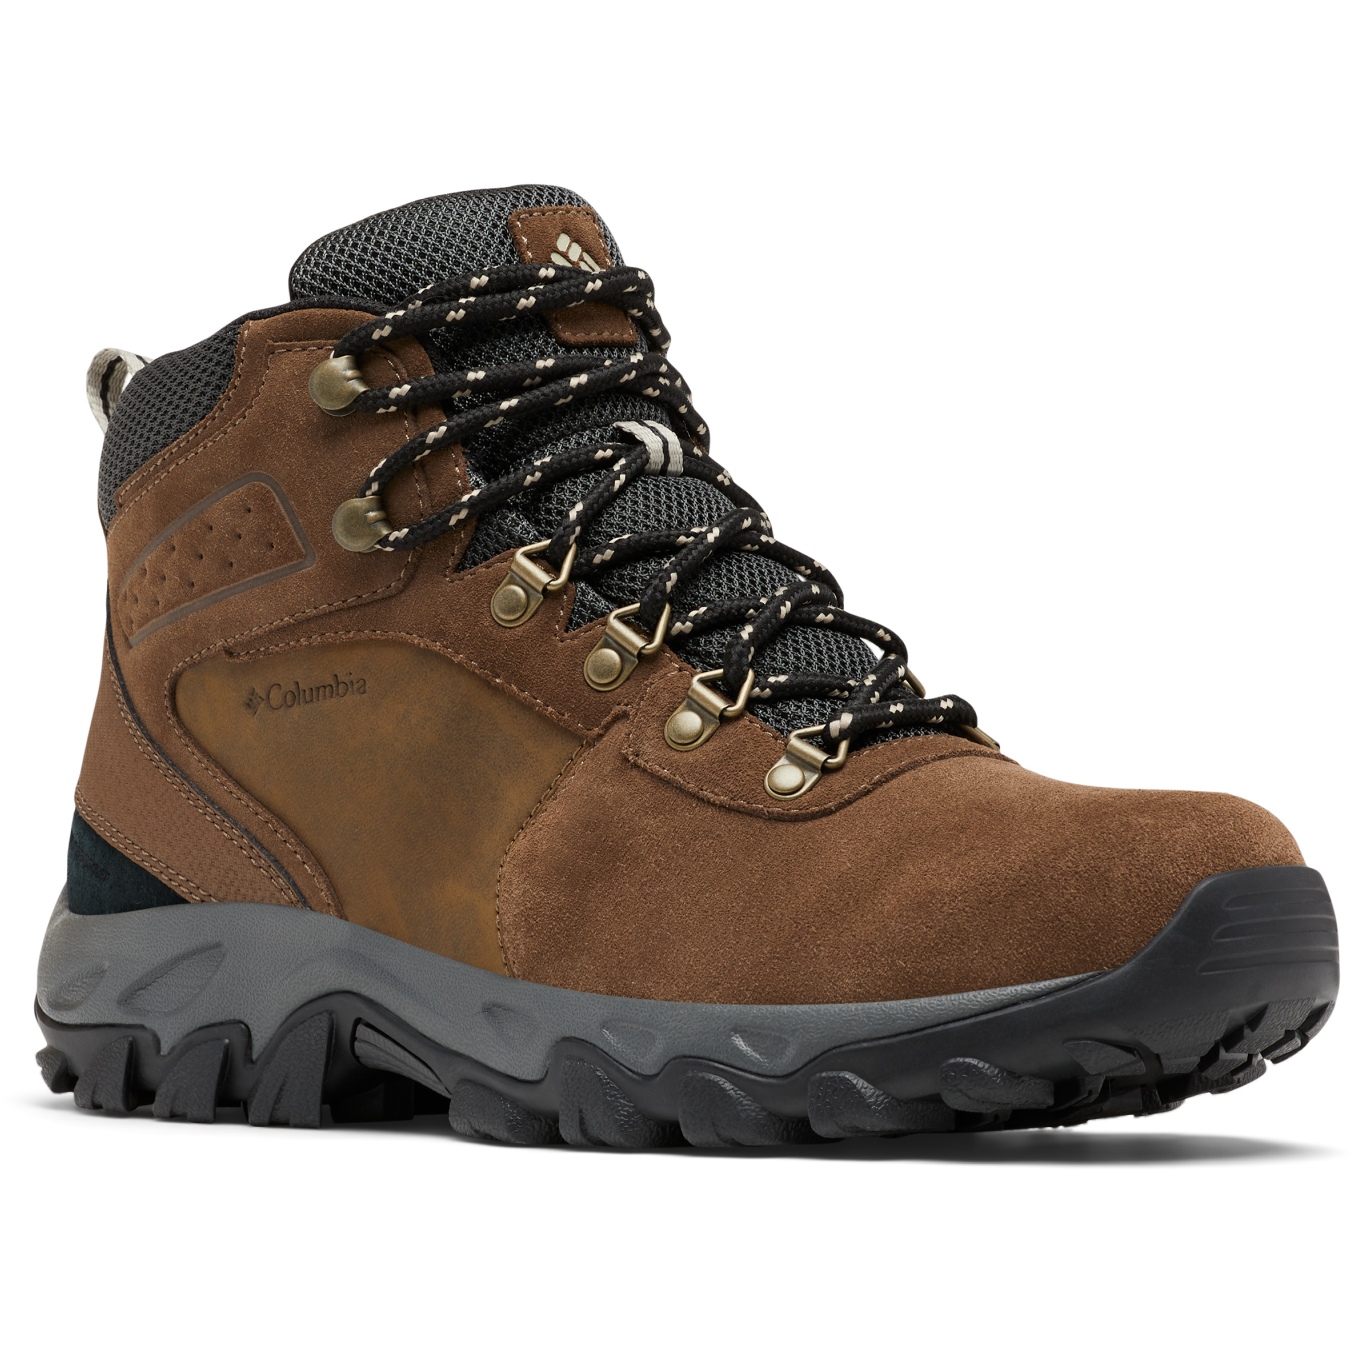 Picture of Columbia Newton Ridge Plus II Suede Waterproof Hiking Shoes Men - Dark Brown/Dark Grey